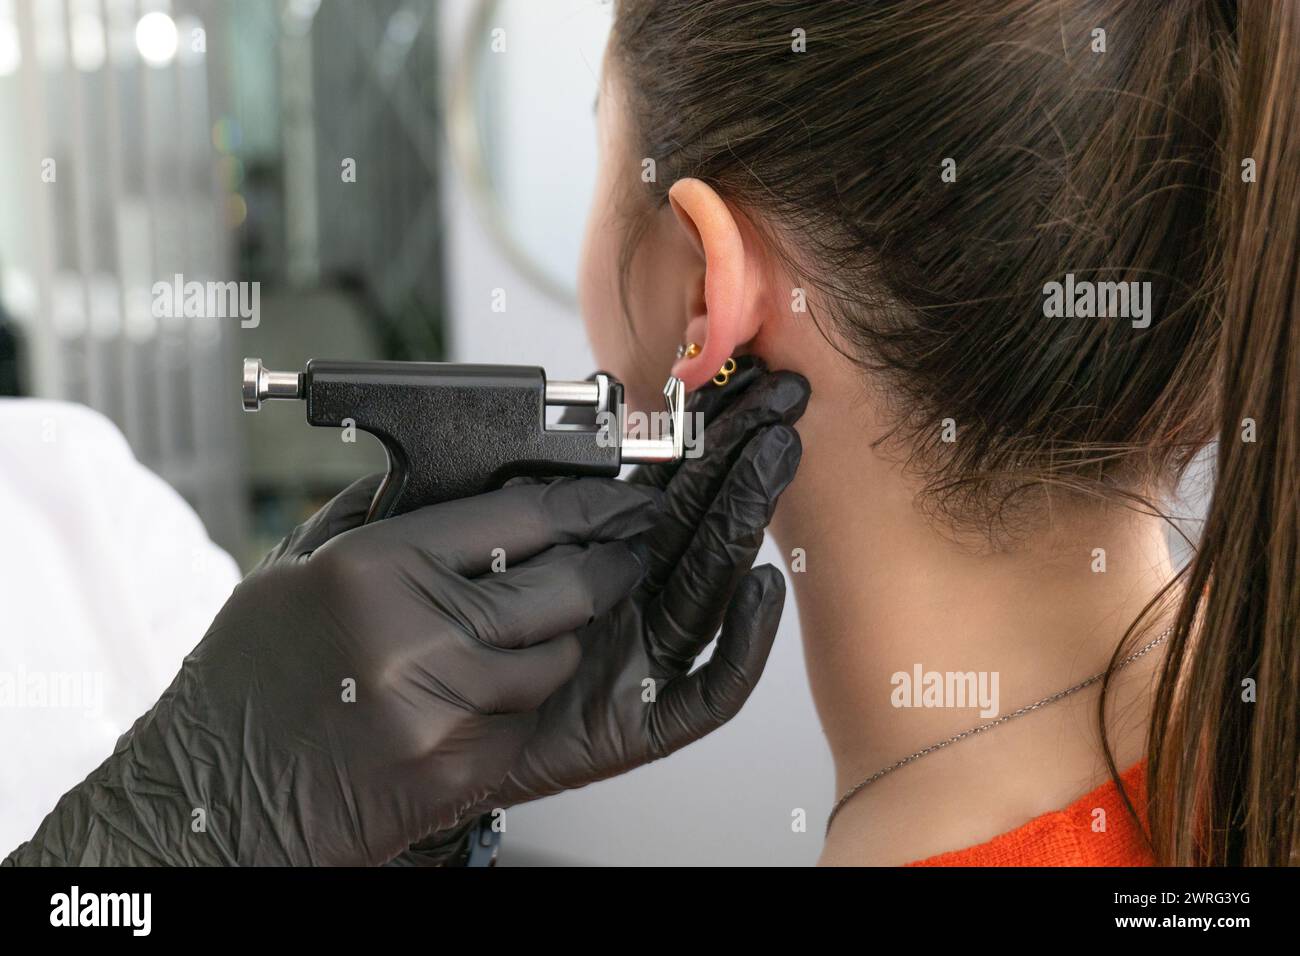 Un medico in guanti medici neri perfora le orecchie di una bella giovane donna nello studio medico utilizzando una pistola piercing nera sicura e orecchino medico Foto Stock